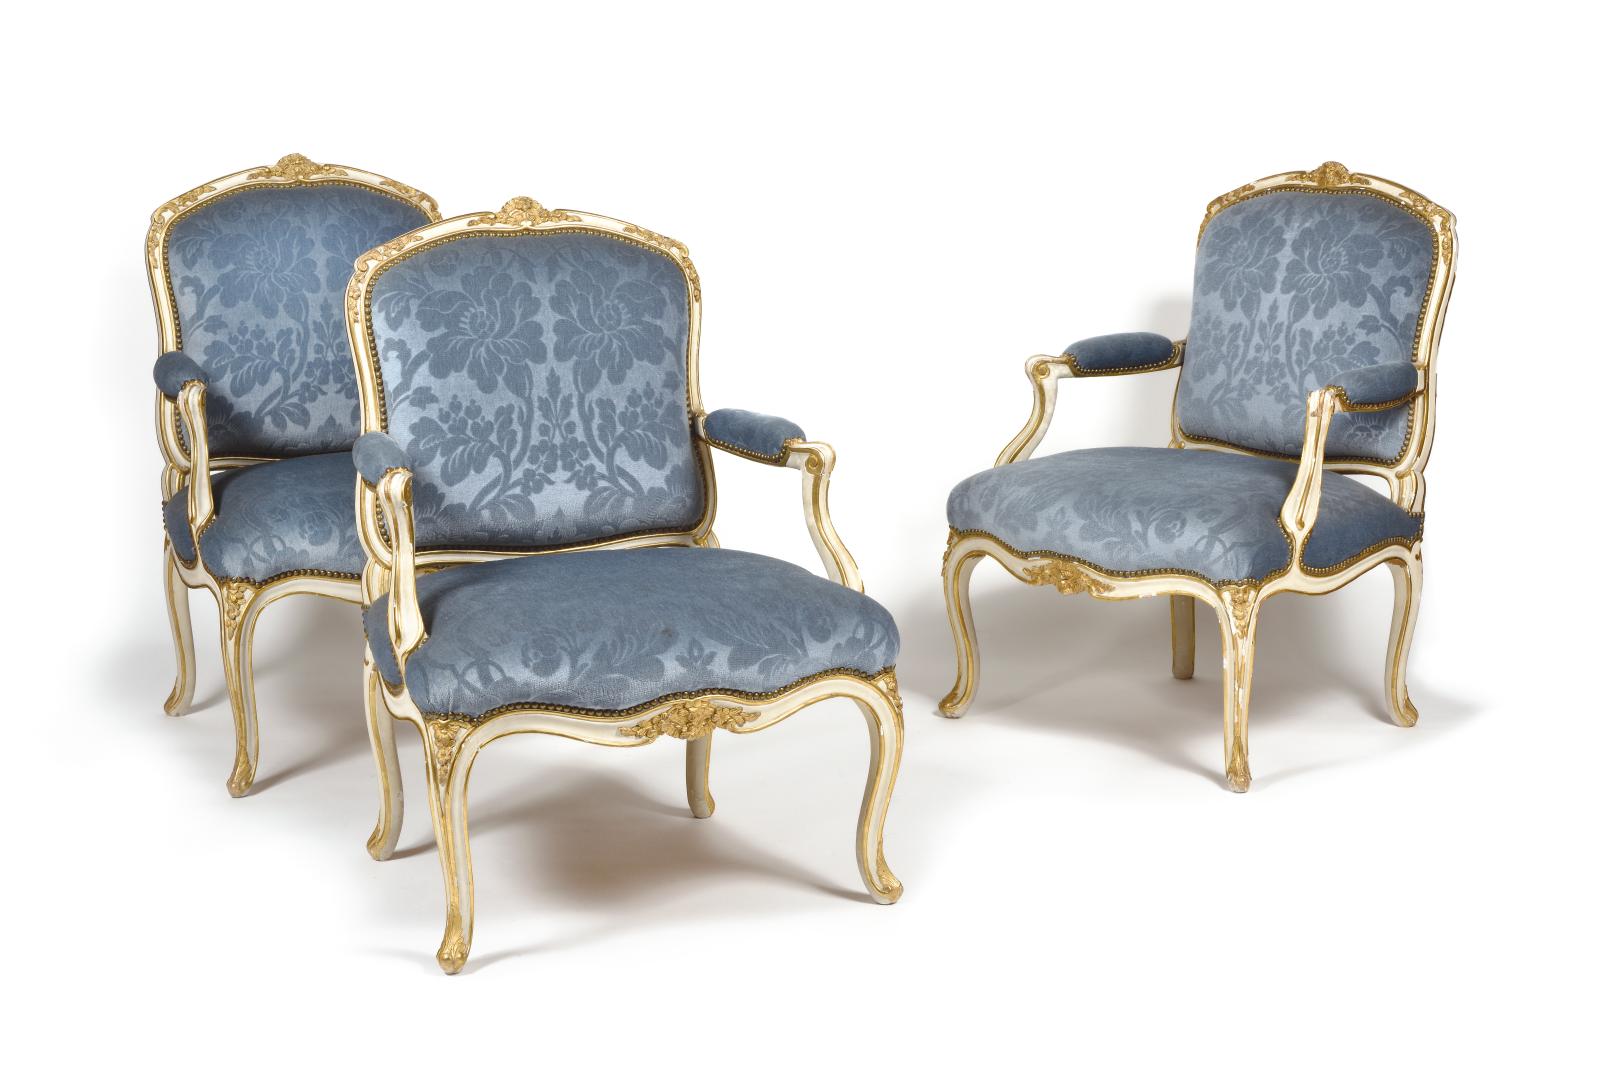 Cette suite de six fauteuils en bois peint et doré (94 x 67 cm), dont le dossier plat et arrondi s’orne sobrement de feuillages, d’agrafes